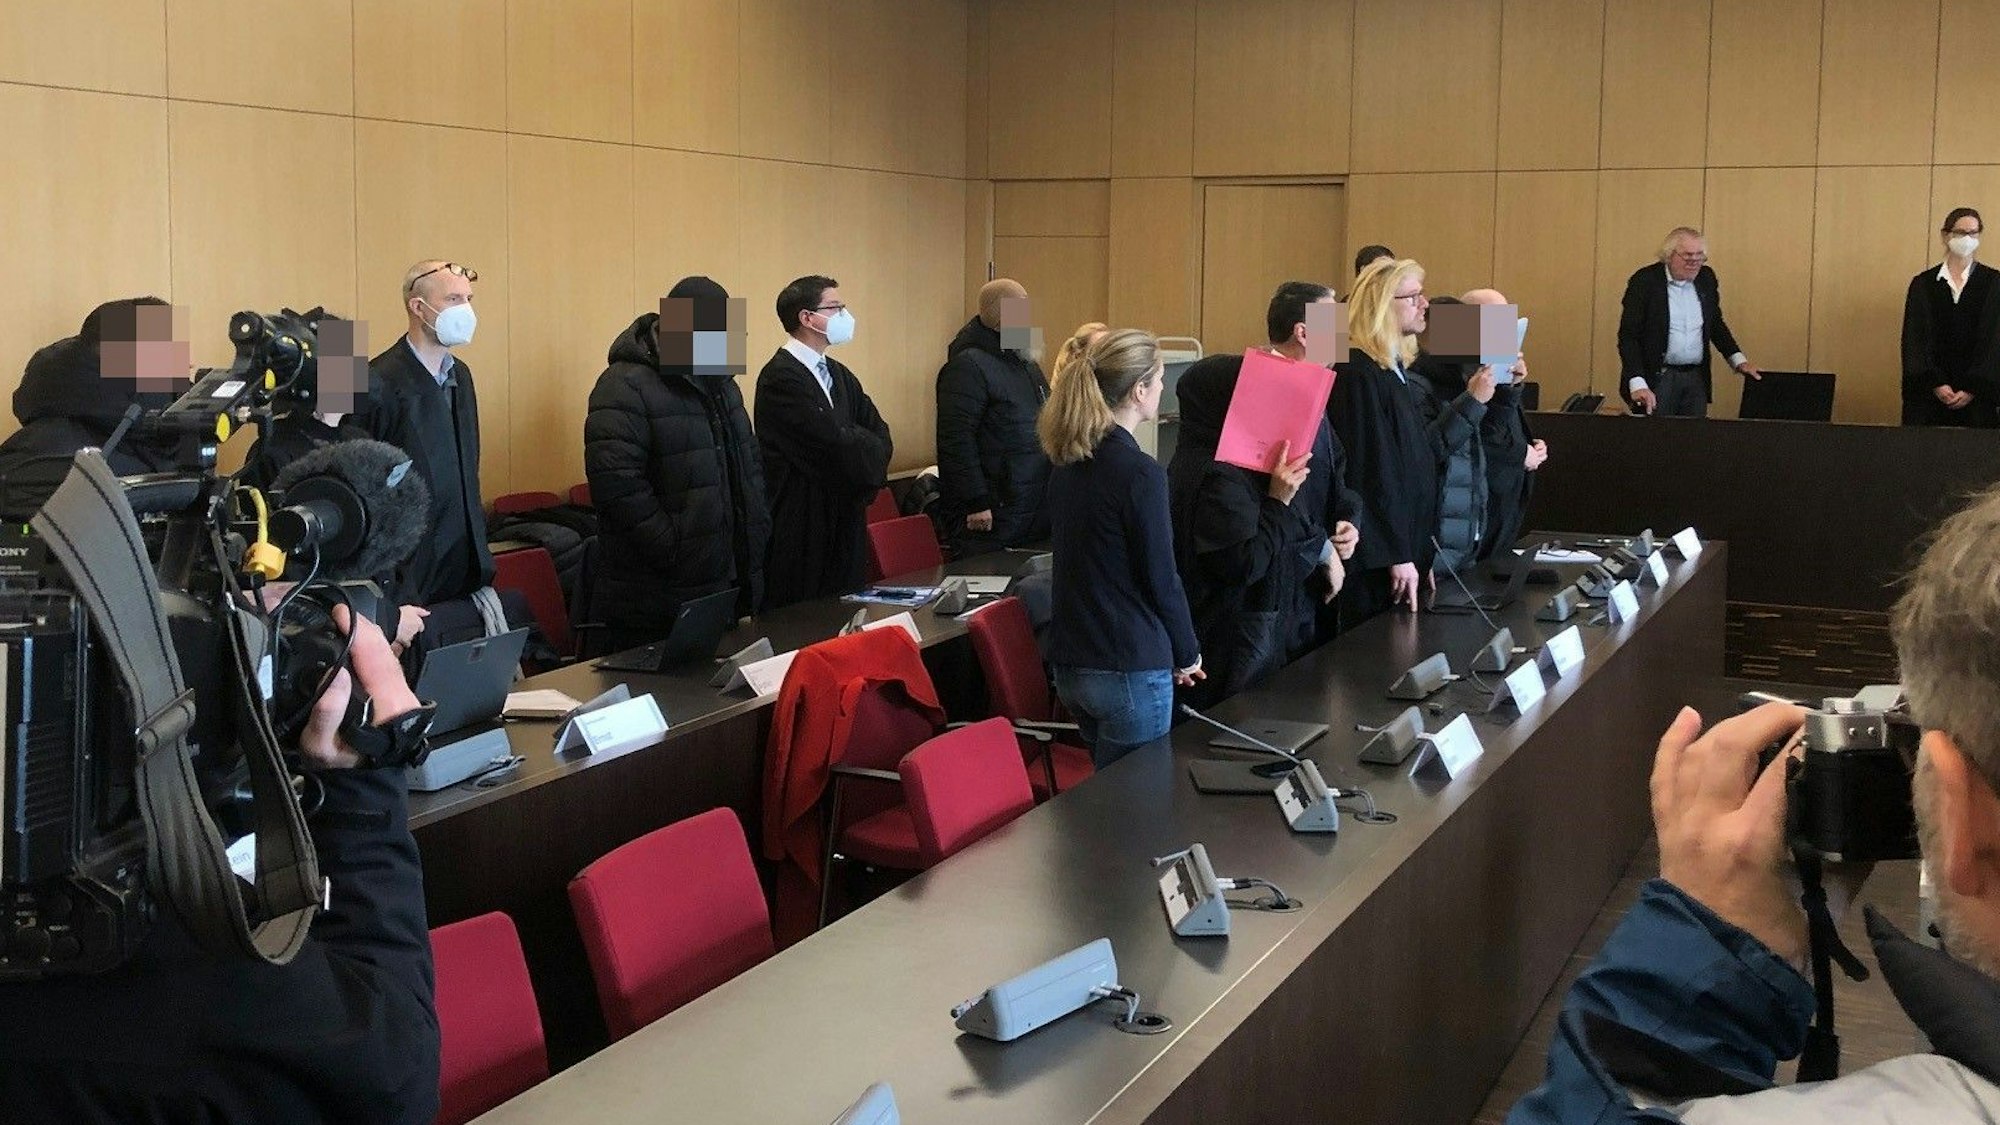 Leverkusener Mitglieder Al-zein-Prozess am Düsseldorfer Landgericht, Urteilsverkündung am 22.12.22